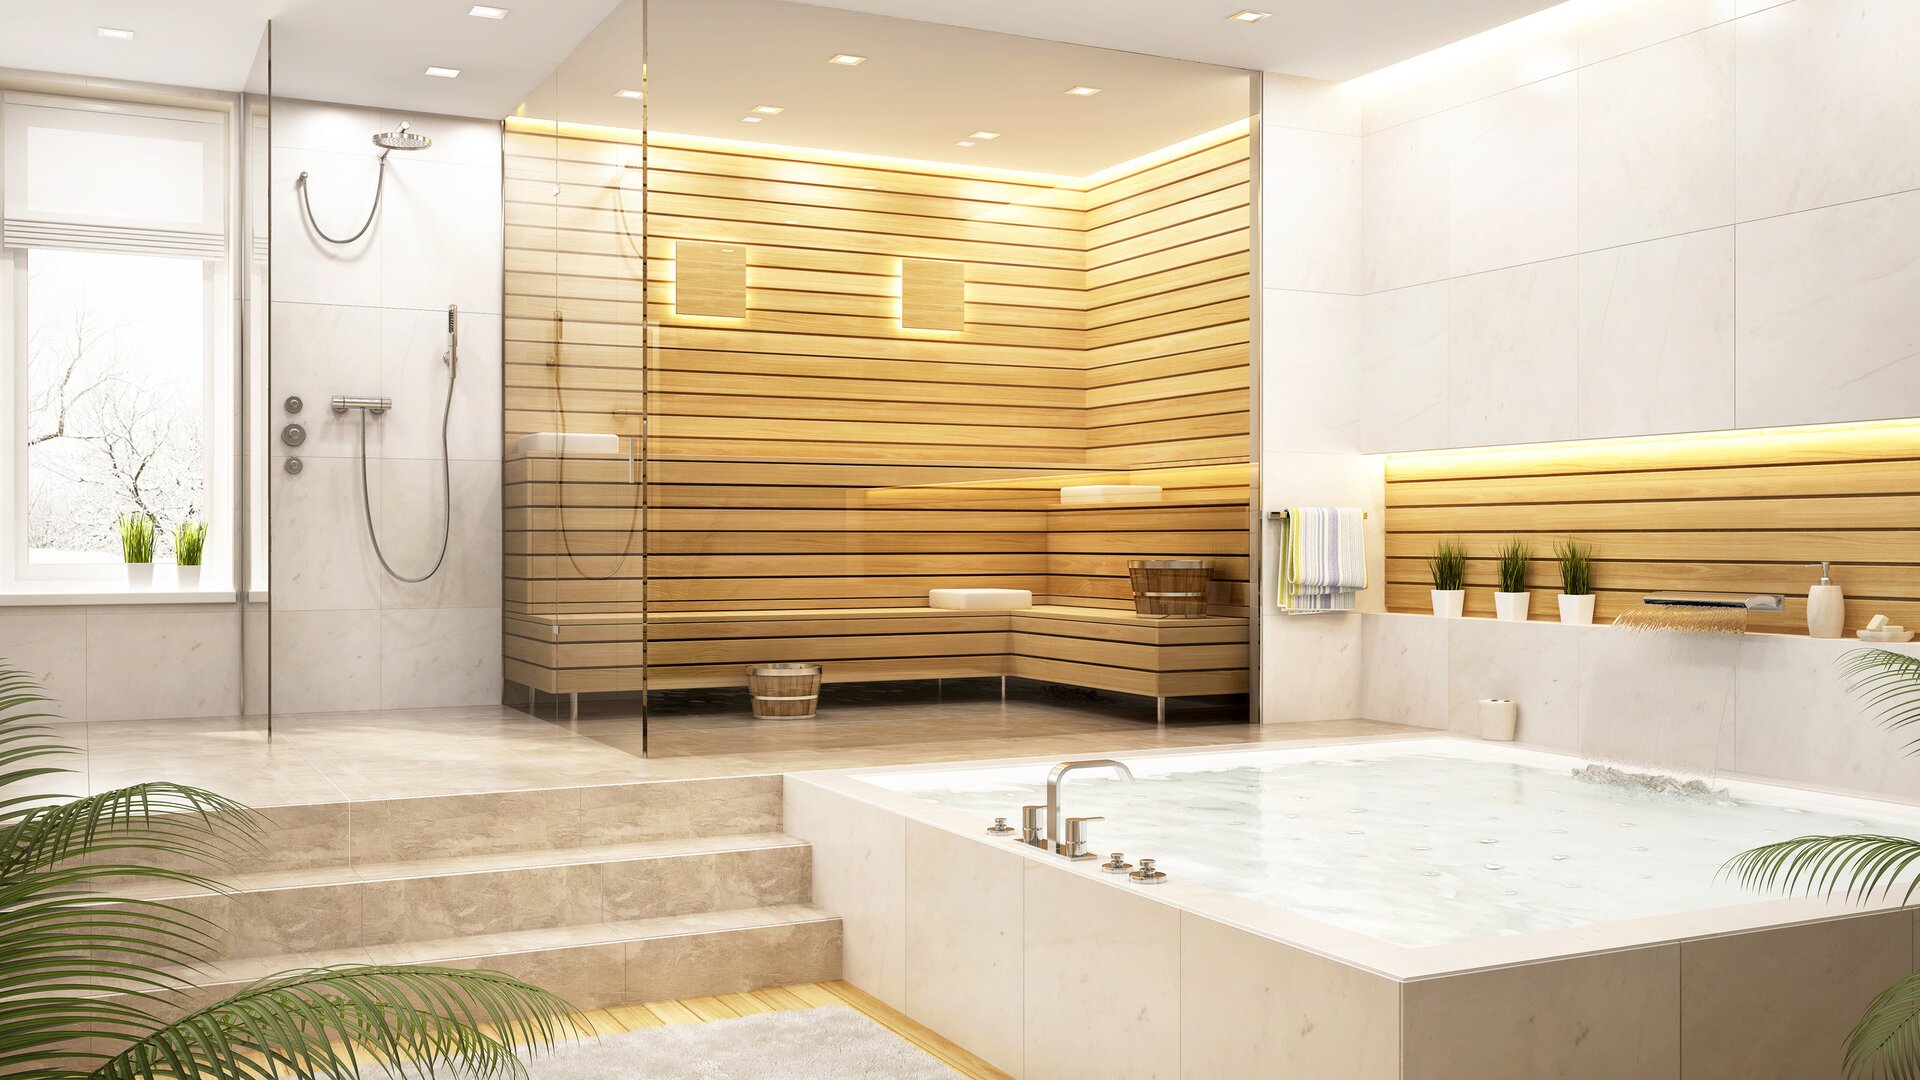 Moderne lichte badkamer met natuurstenen tegels, douche, whirlpool en houten sauna.